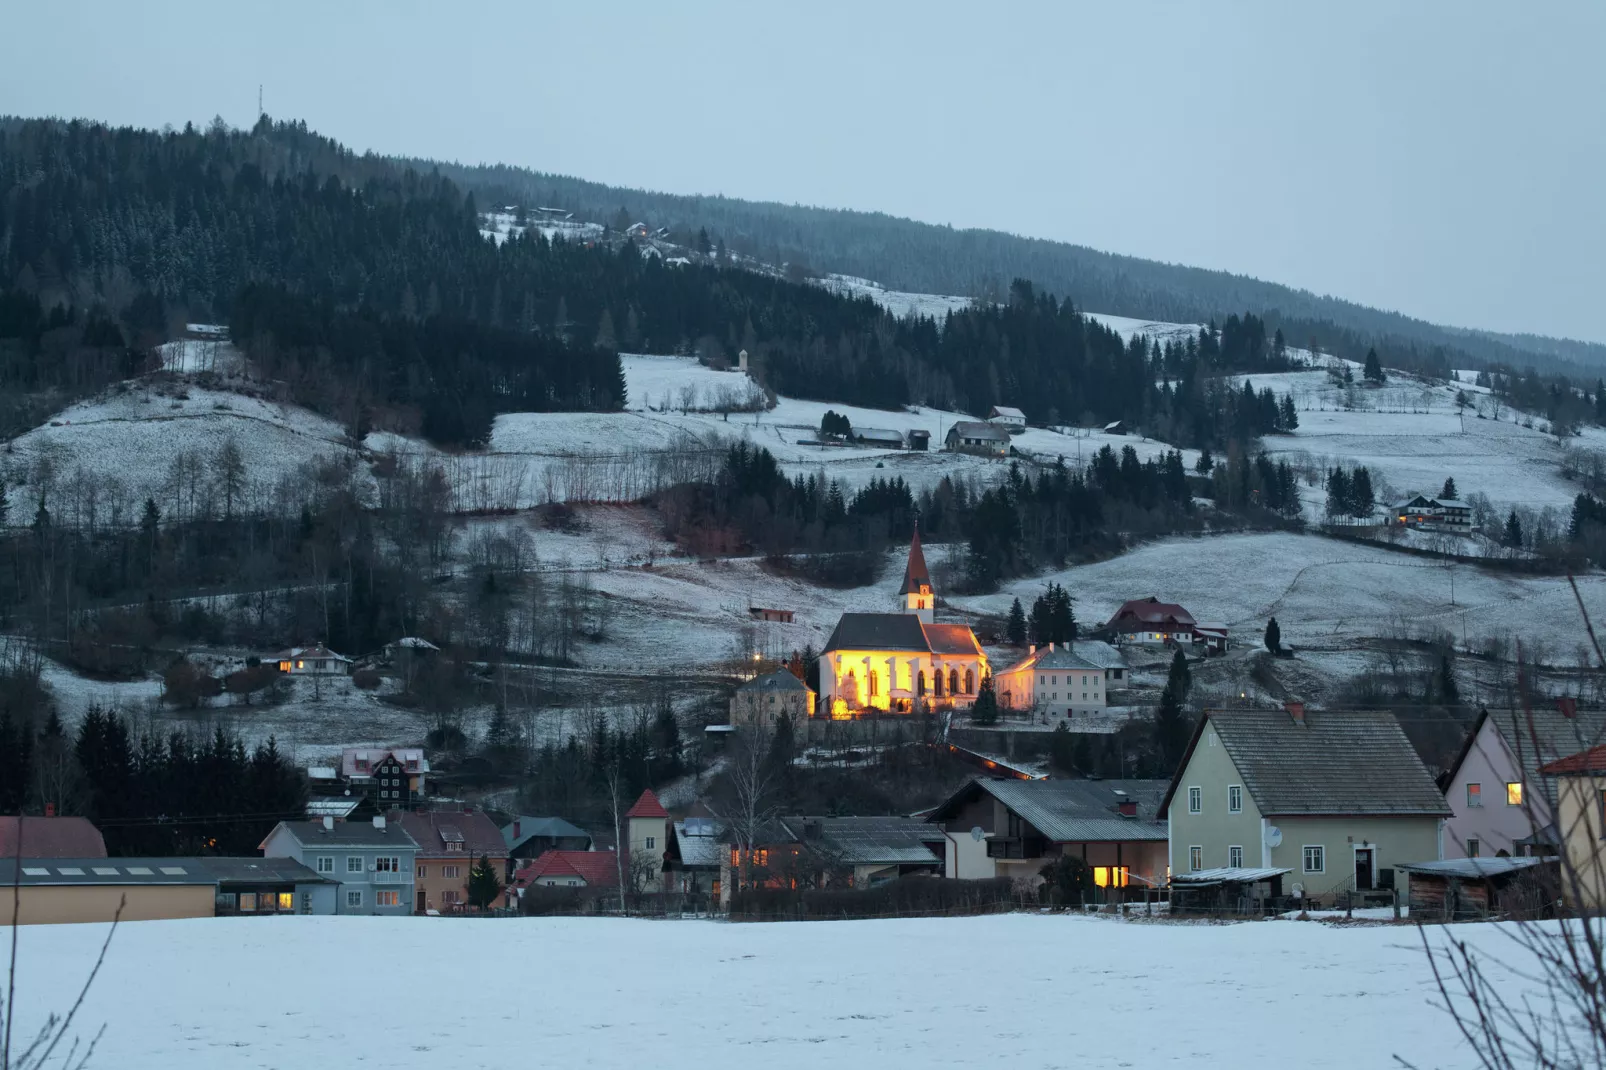 Chalet De Berghut-Gebied winter 5km